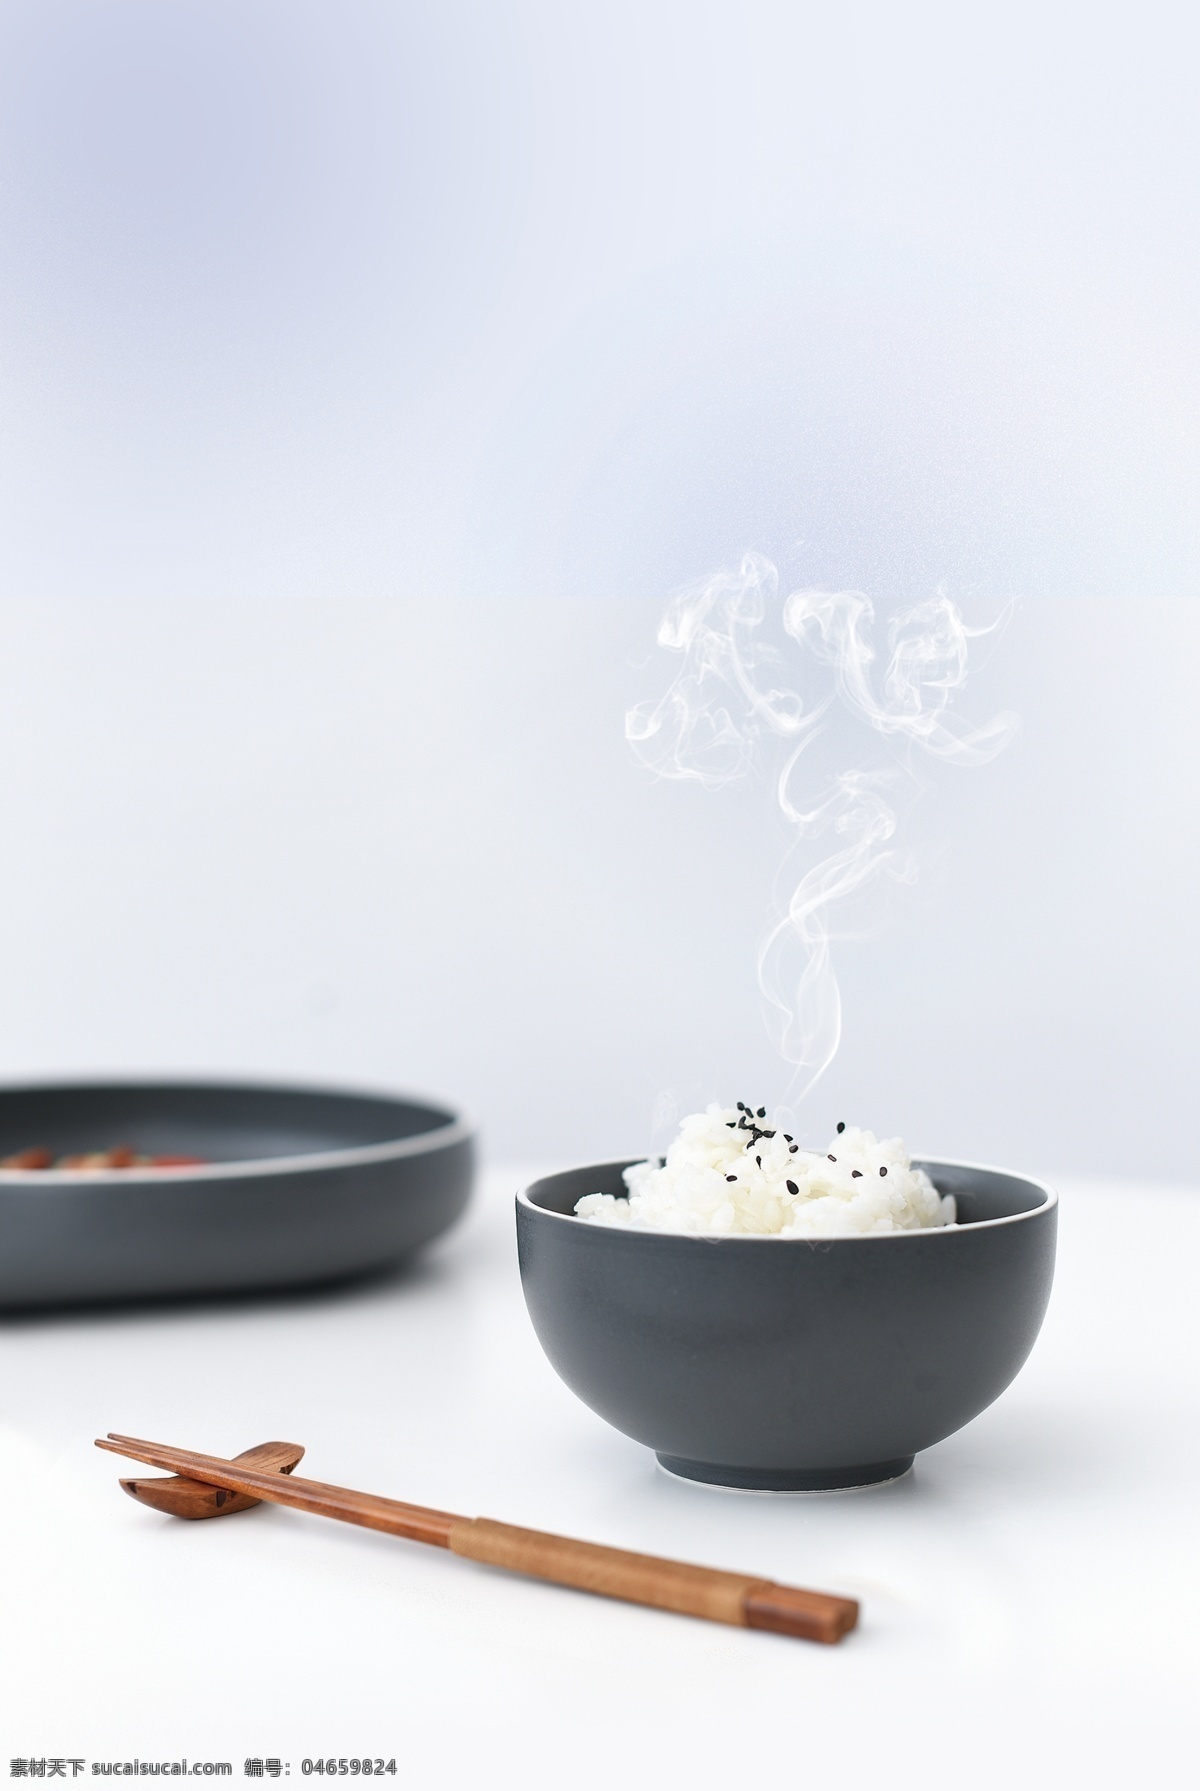 热气腾腾 米饭 美的 电饭煲 一碗米 陶瓷碗 餐饮美食 传统美食 摄影图库 海报 生活百科